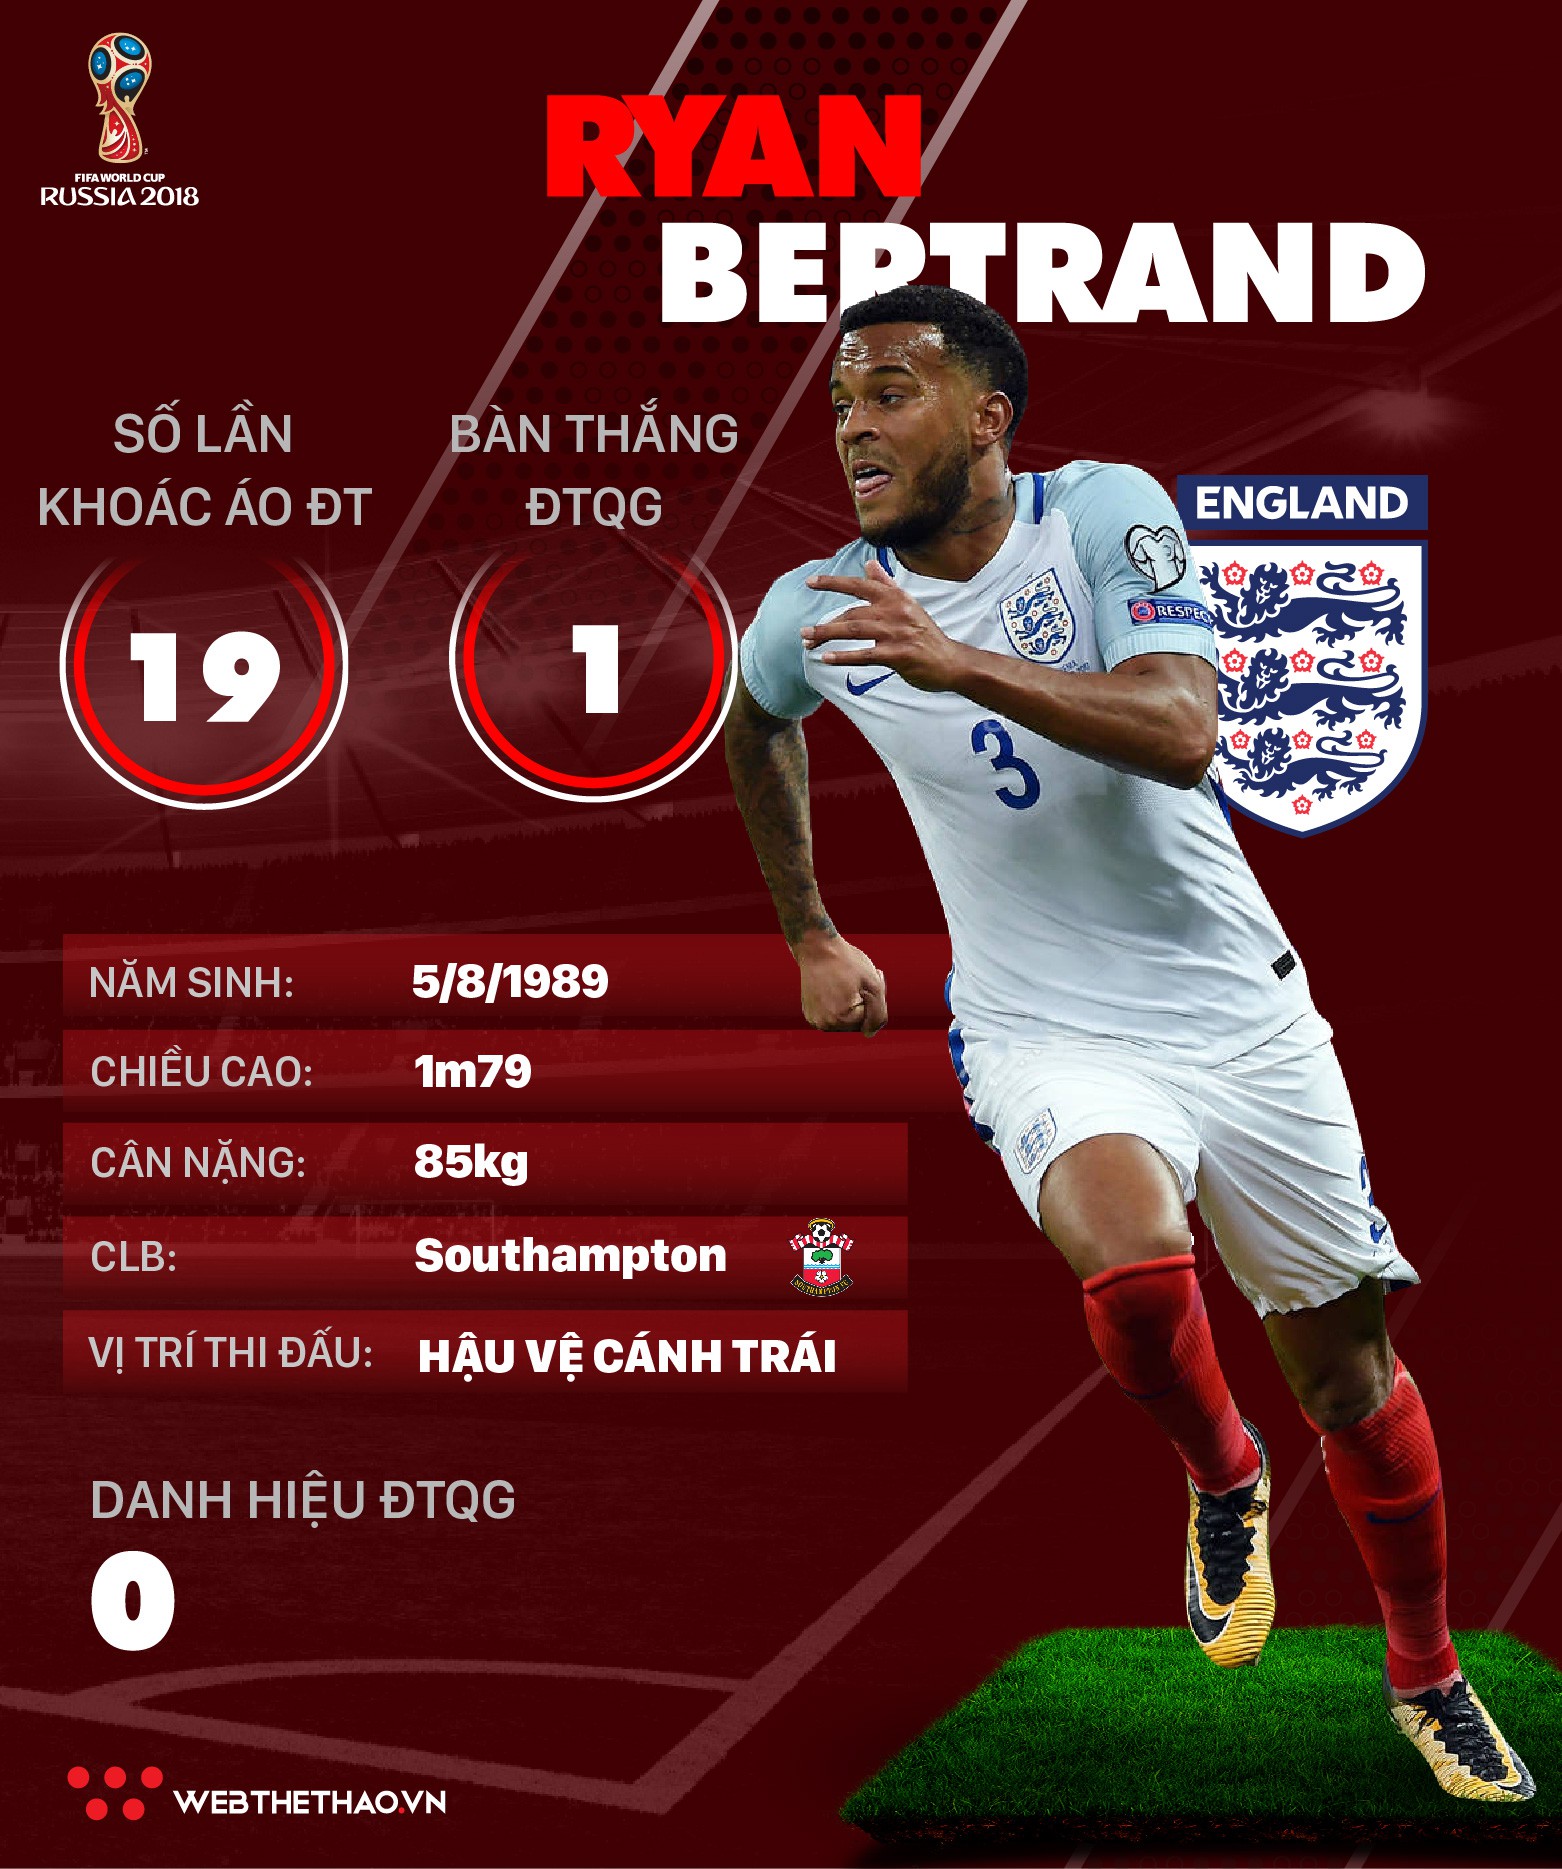 Thông tin cầu thủ của Ryan Bertrand ĐT Anh dự World Cup 2018